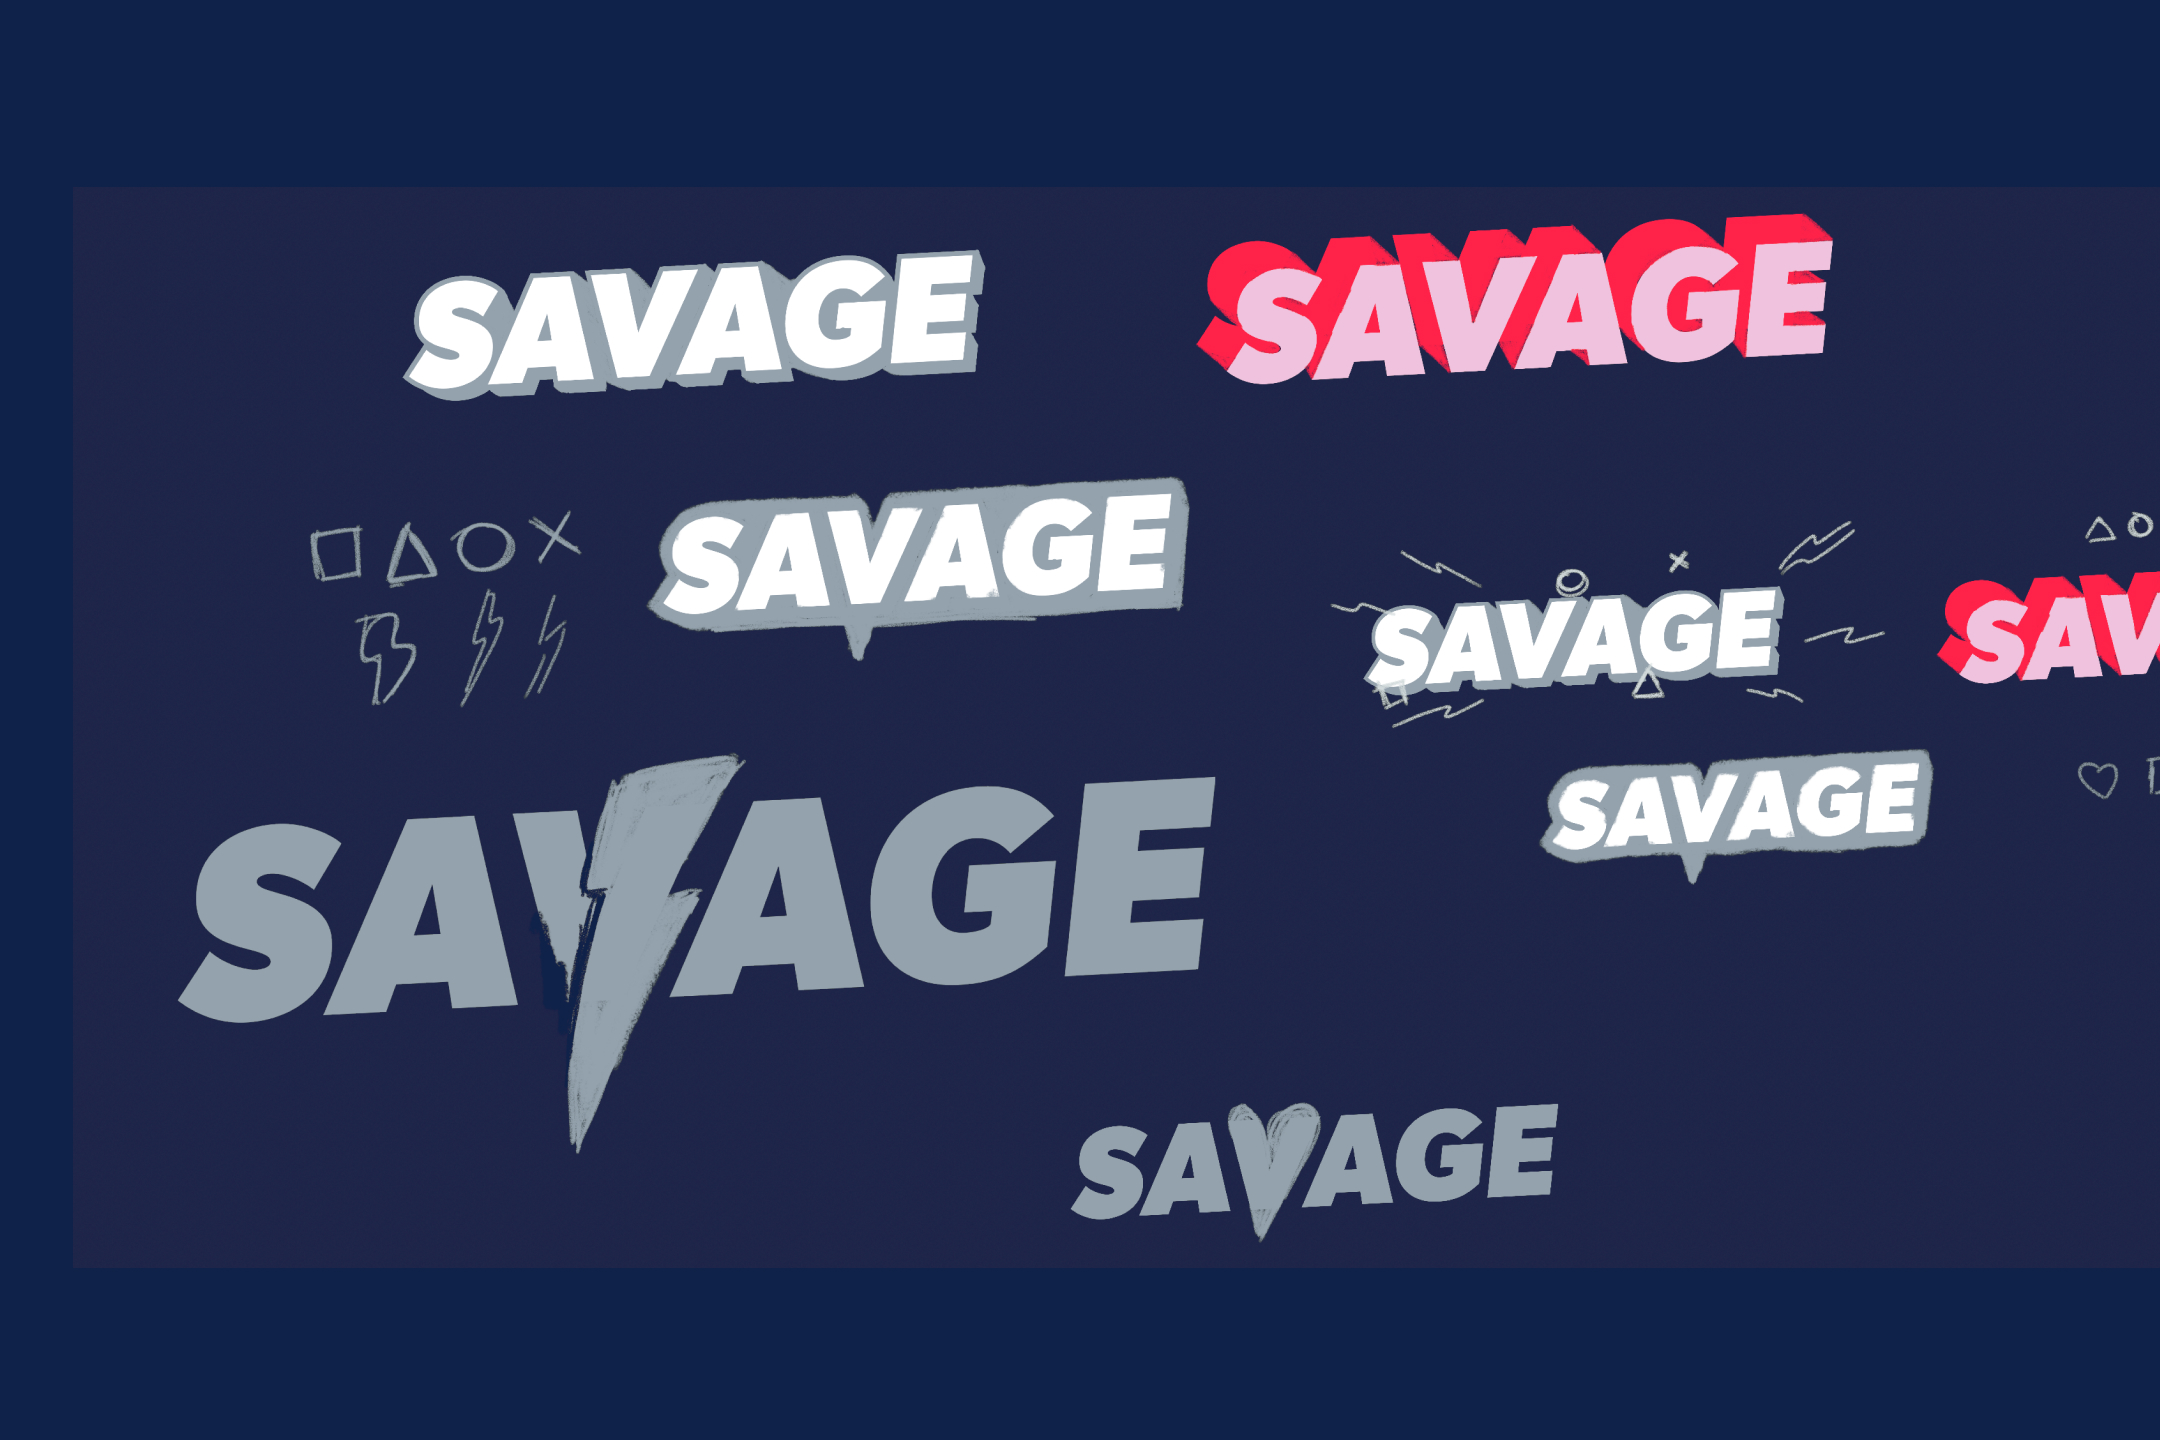 Savage games variants